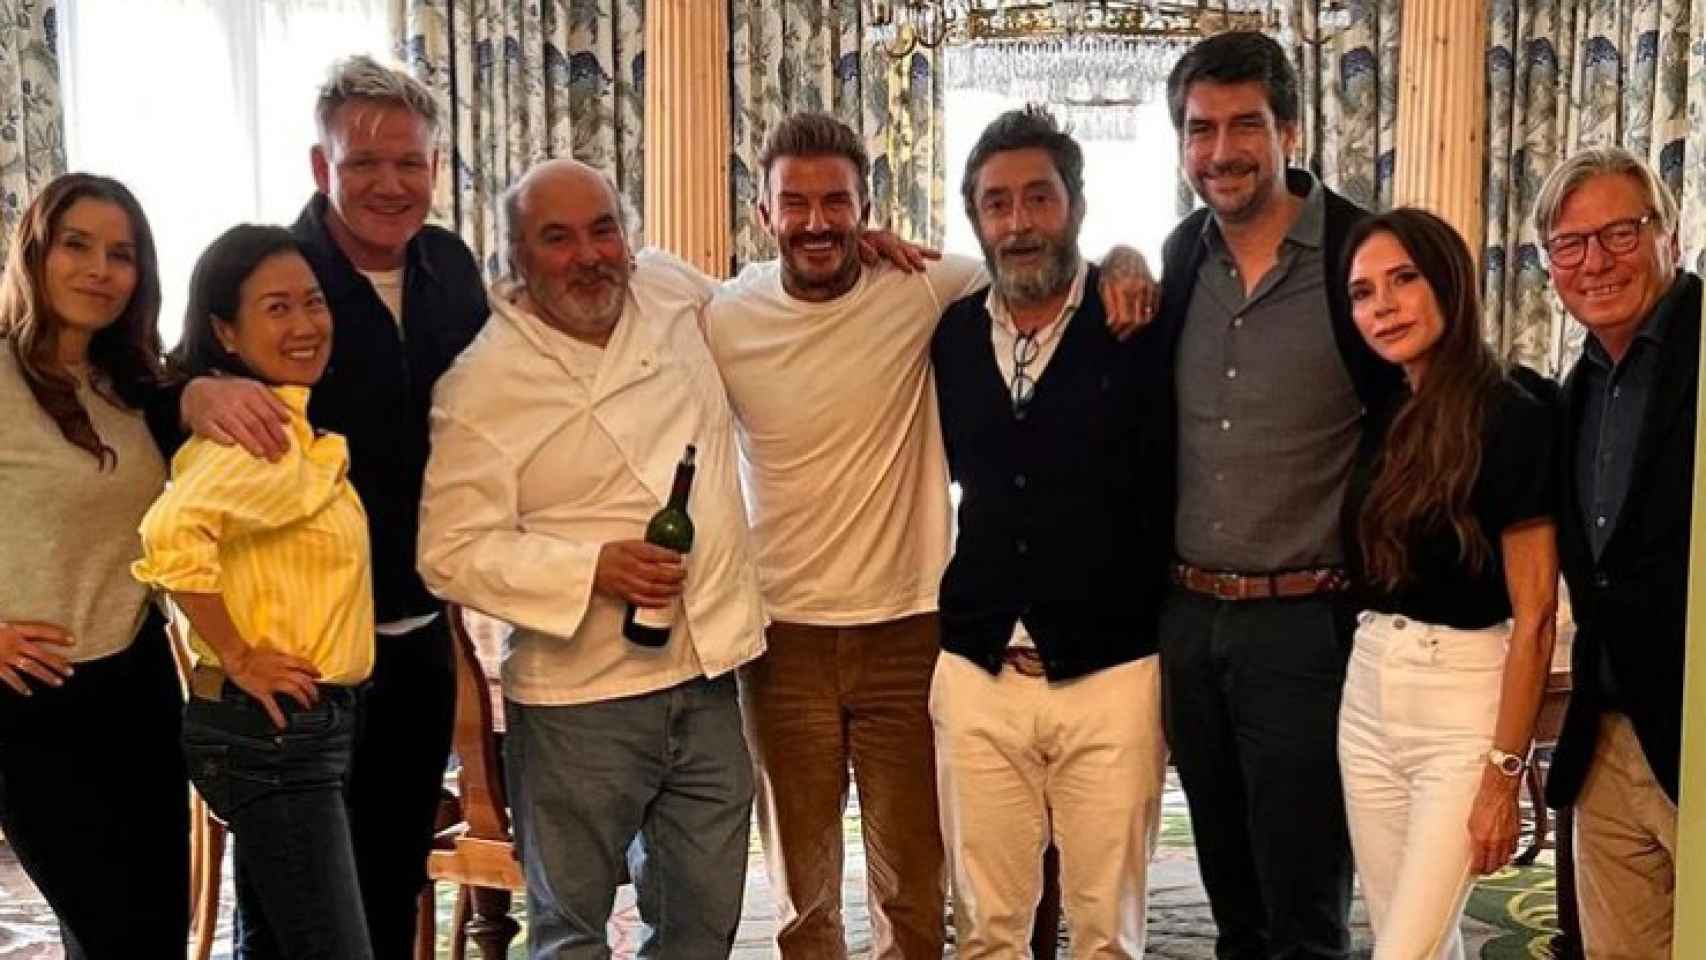 Dámaso, el matrimonio Beckham, Gordon Ramsay y Peter Sisseck, entre los comensales en Vega Sicilia